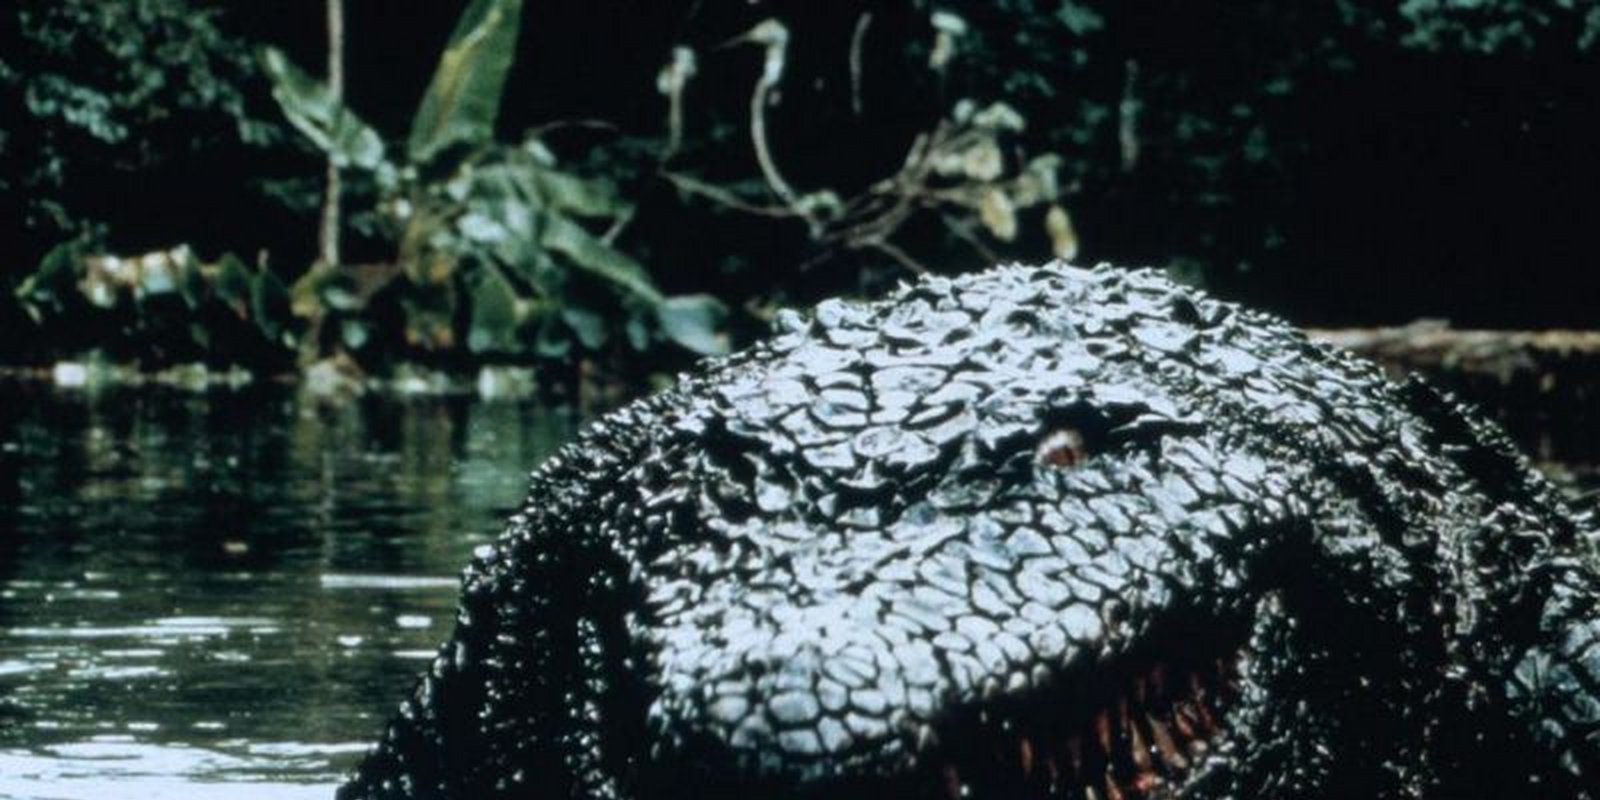 Killer Crocodile 2 - Die Mörderbestie